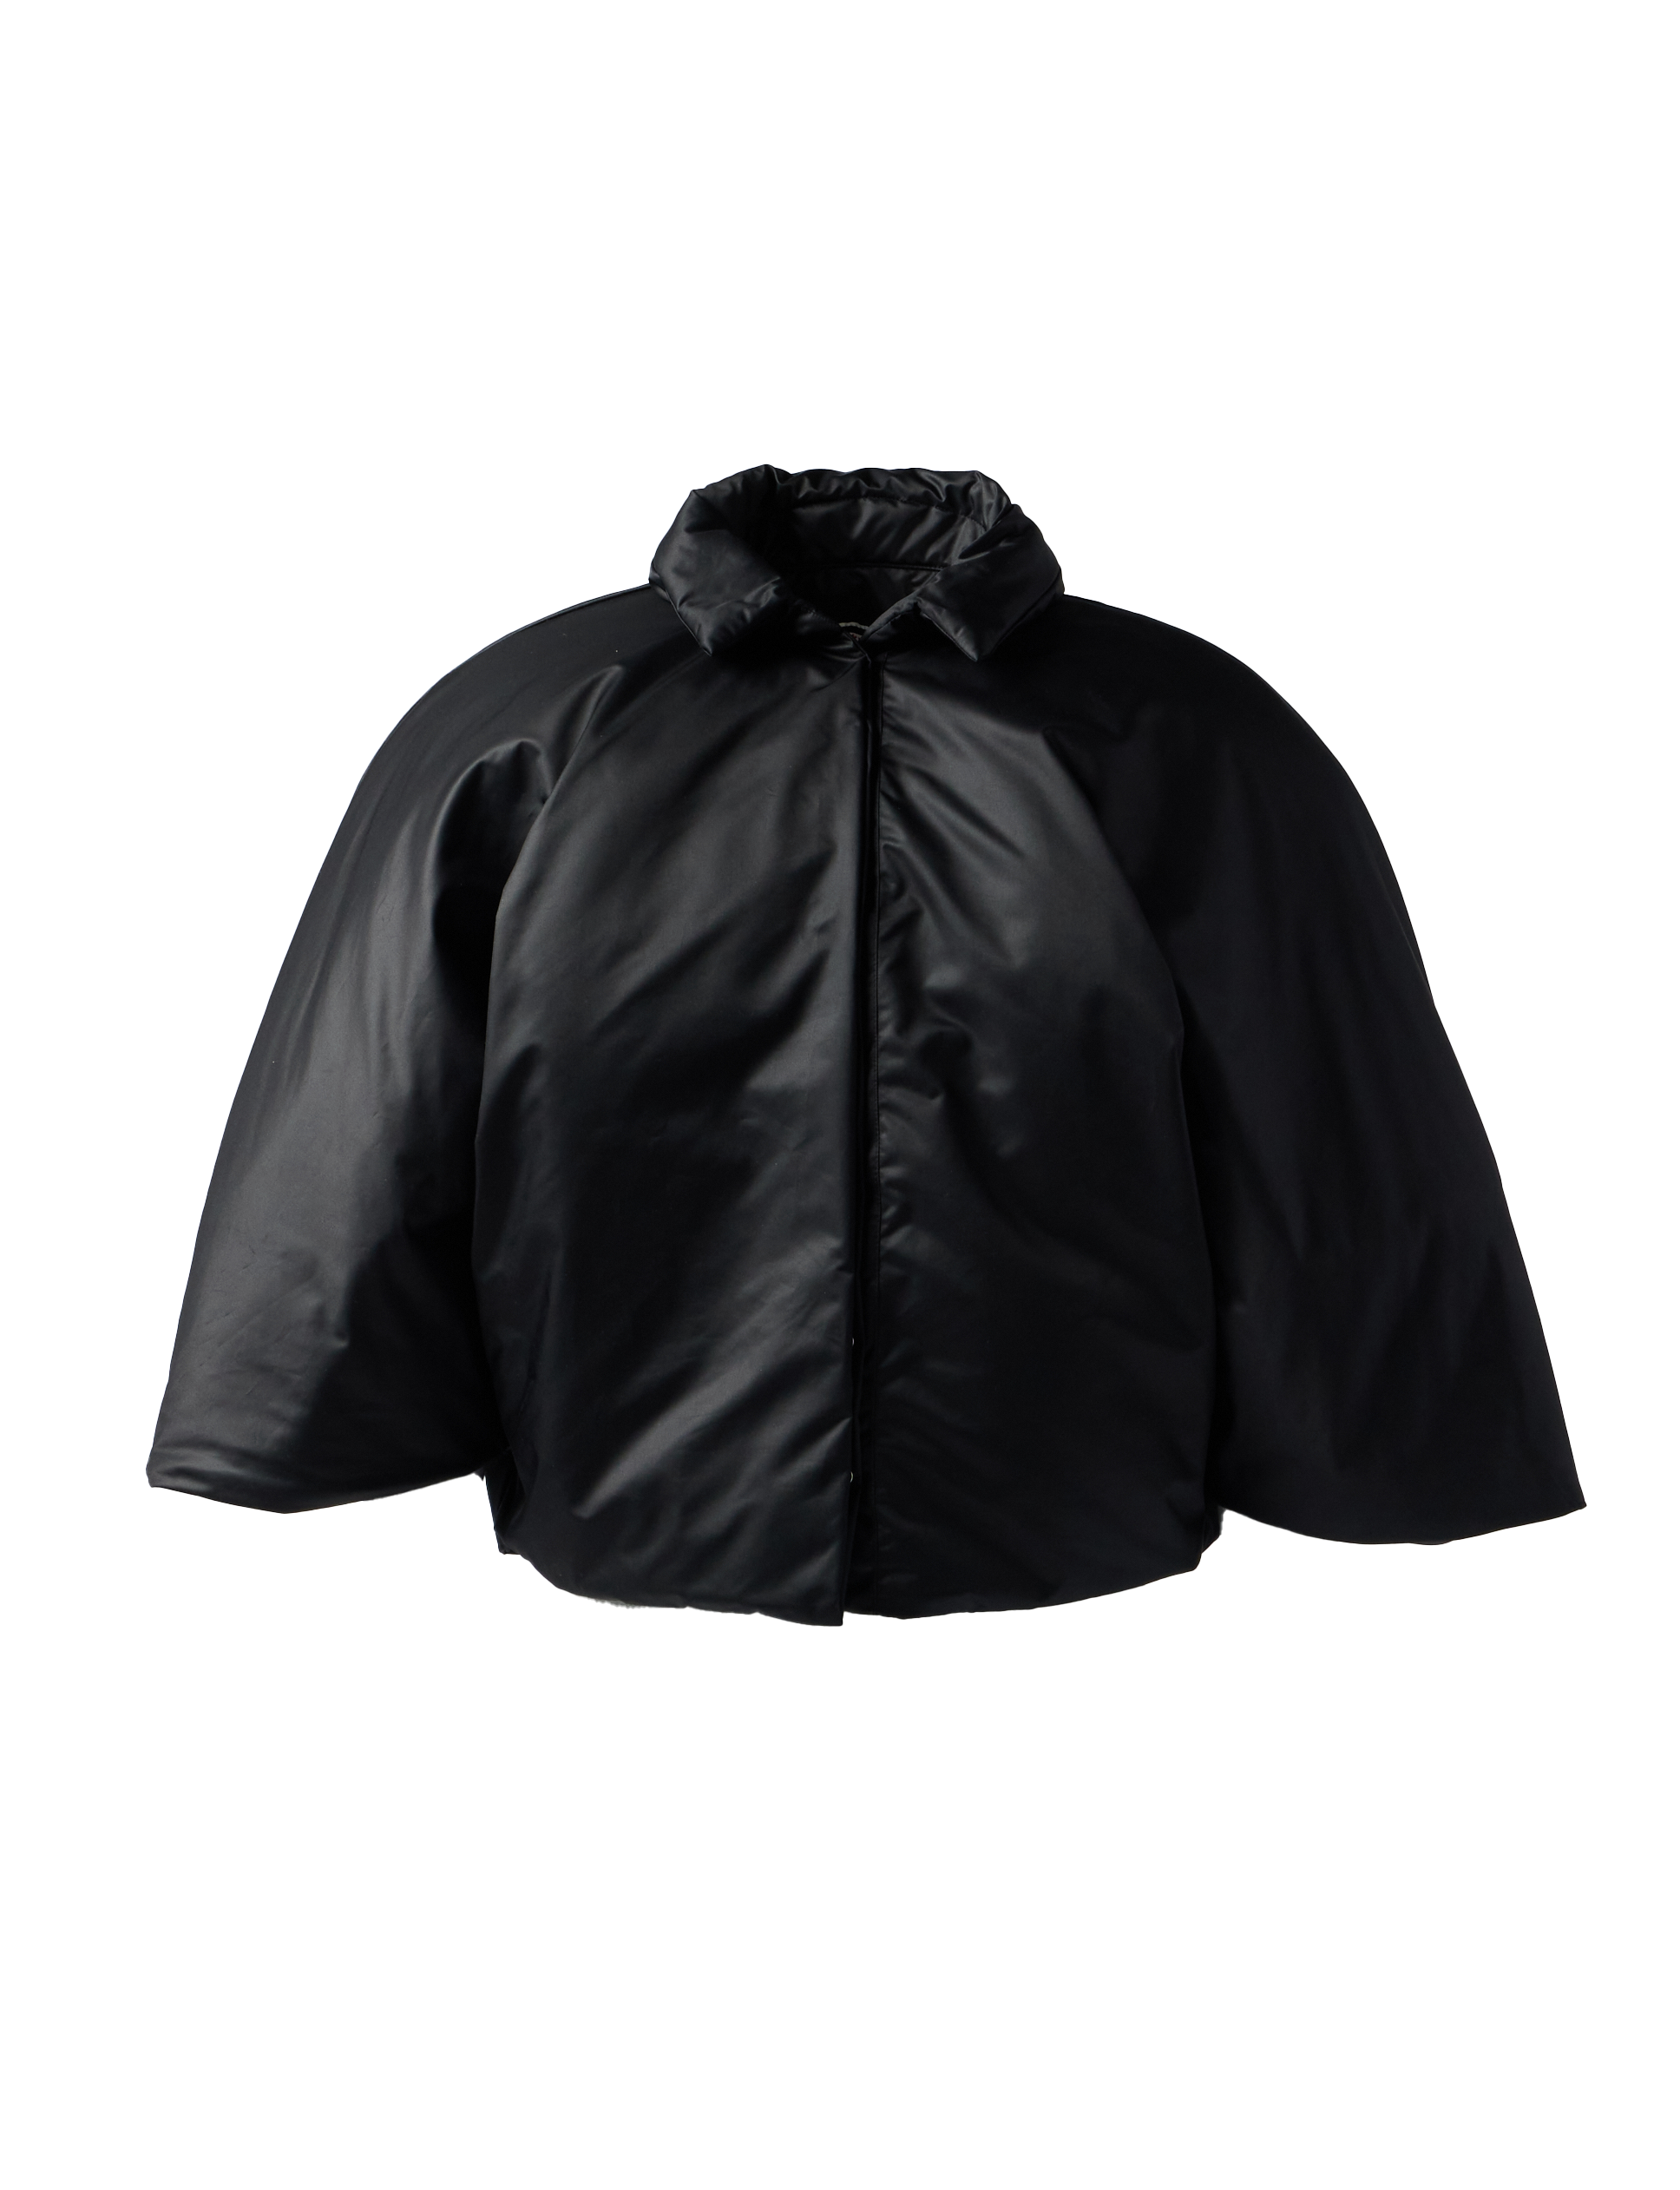 RRR123 - The Magi Jacket product image